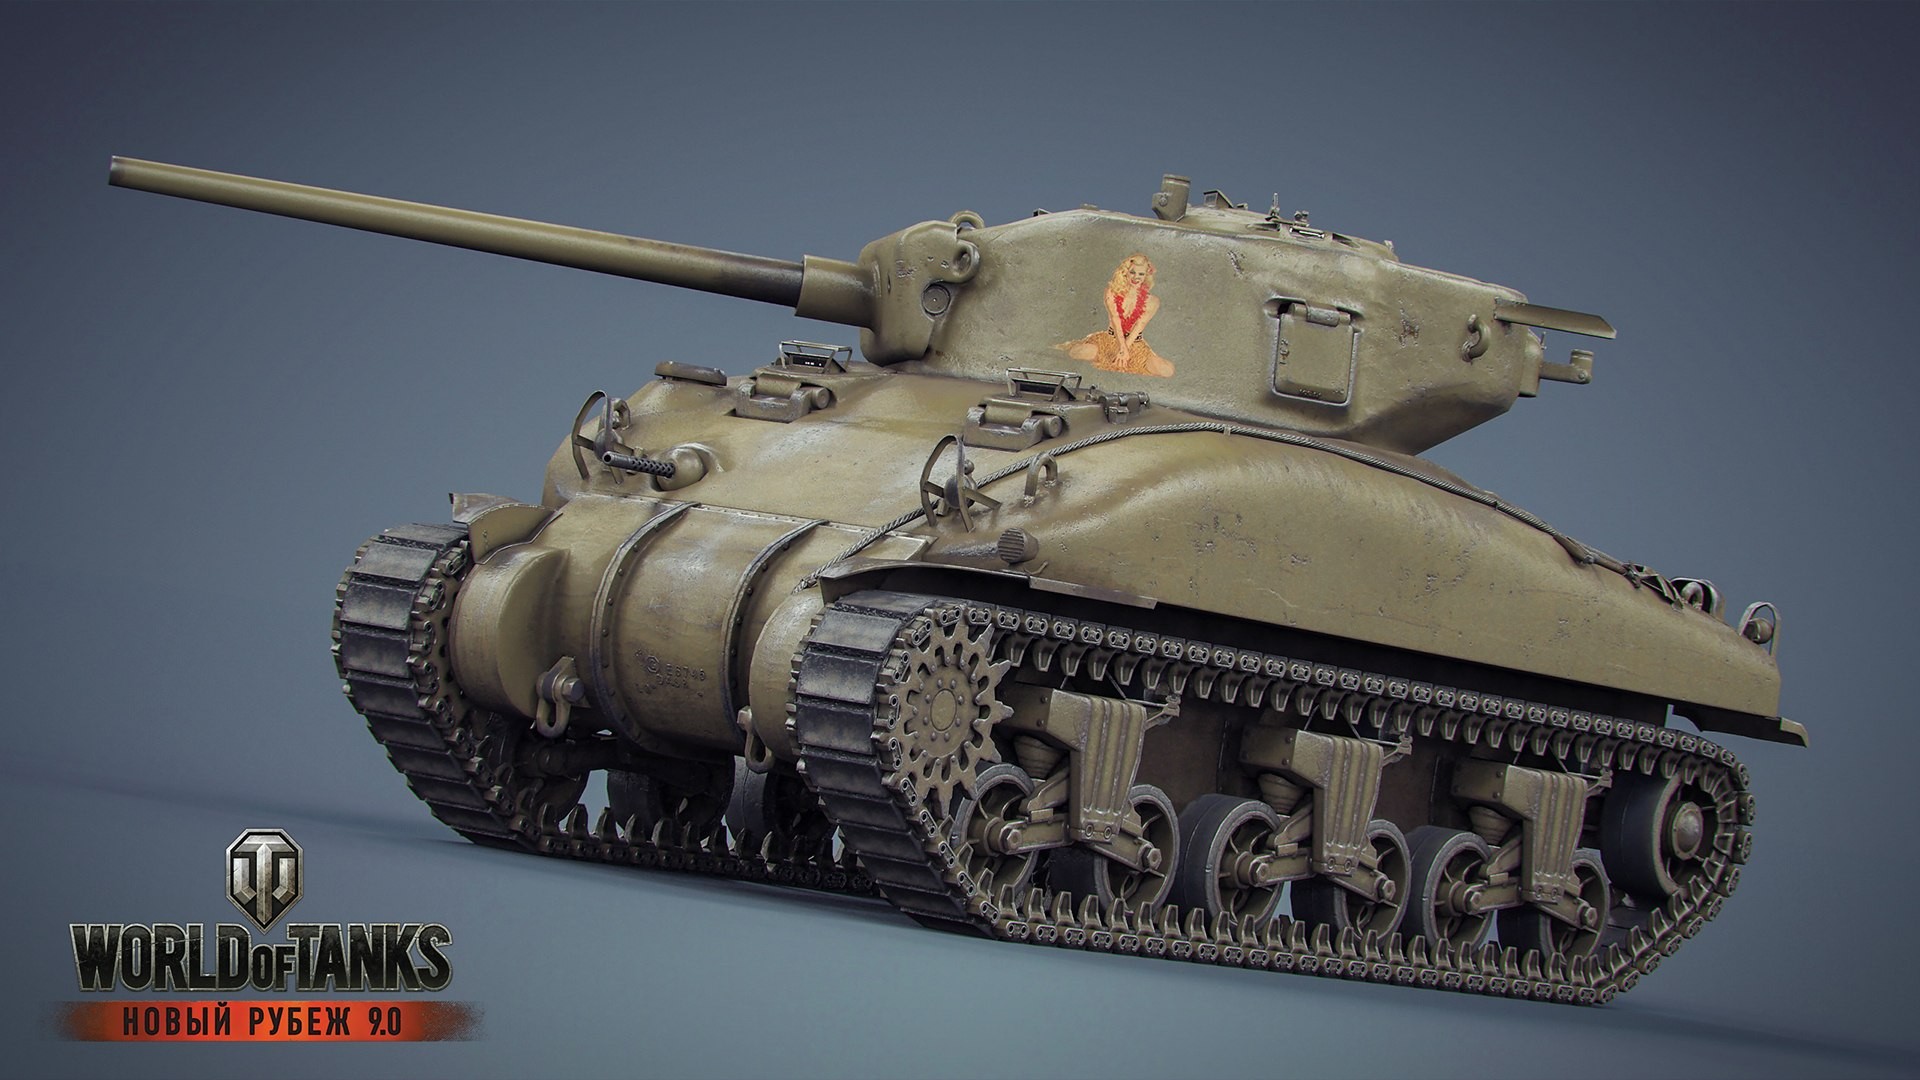 General 1920x1080 World of Tanks tank wargaming video games CGI M4 Sherman